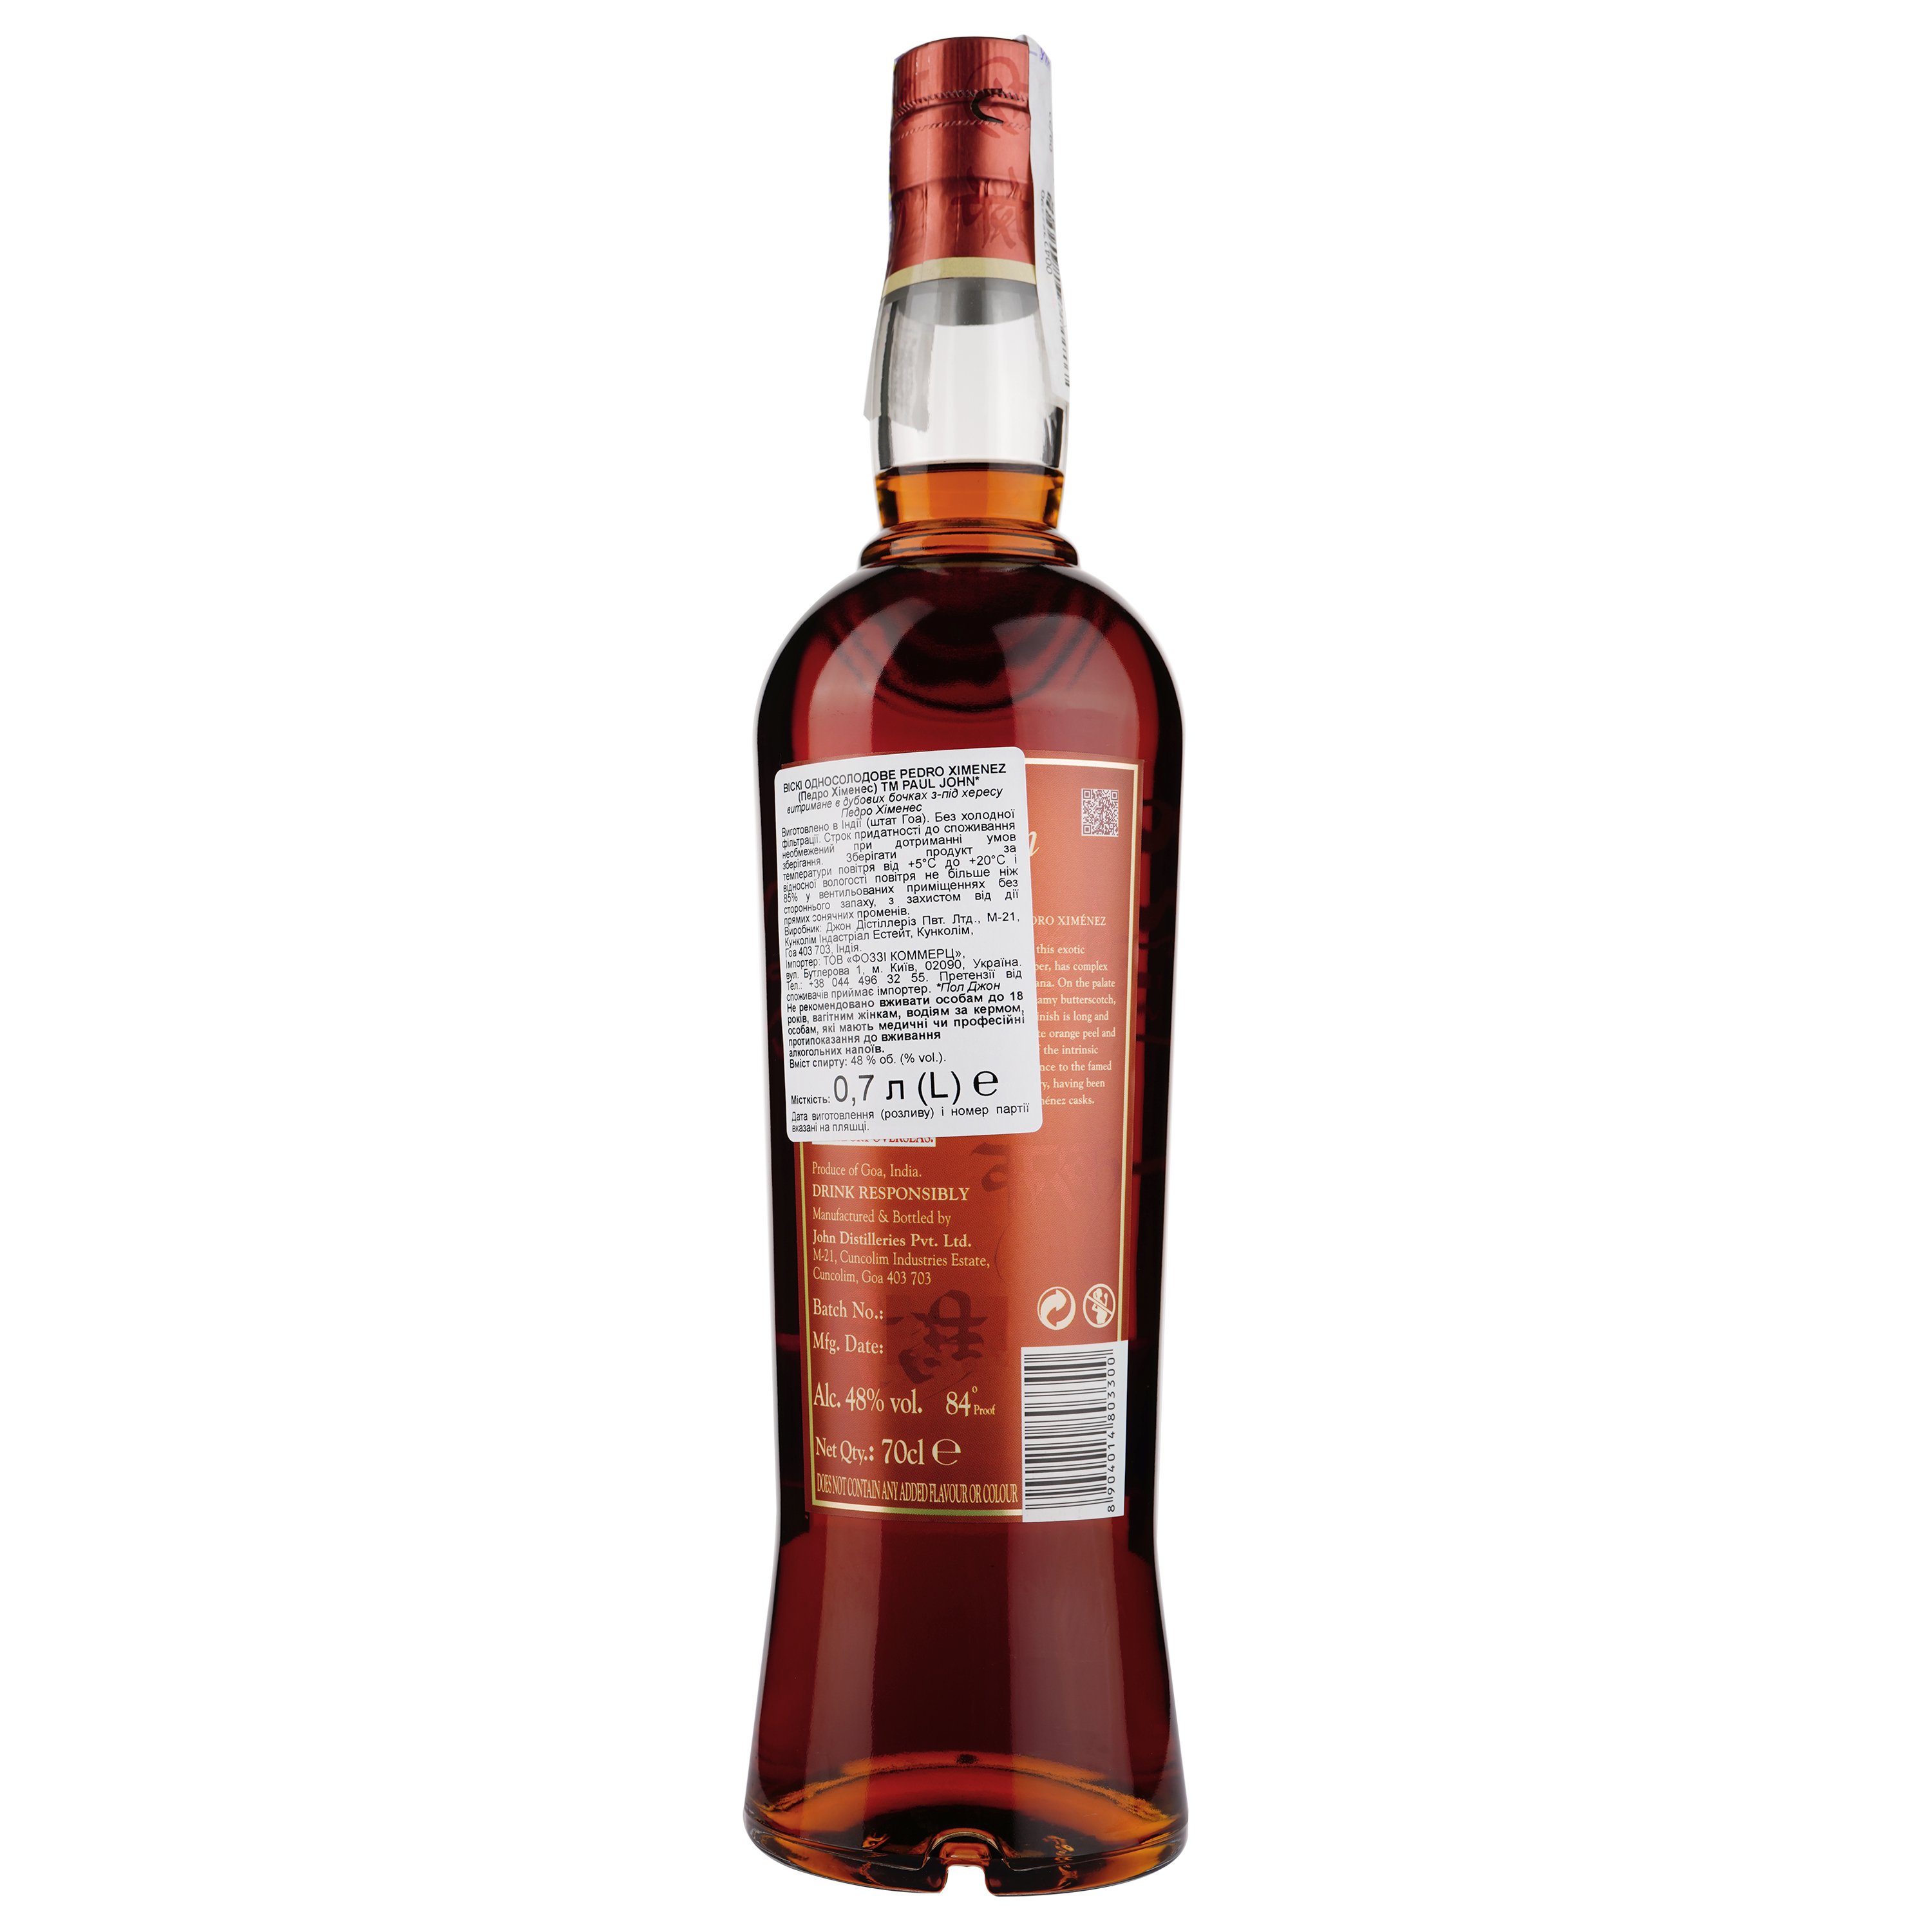 Віскі Paul John Pedro Ximenez Single Malt Indian Whisky, в коробці, 48%, 0,7 л - фото 2